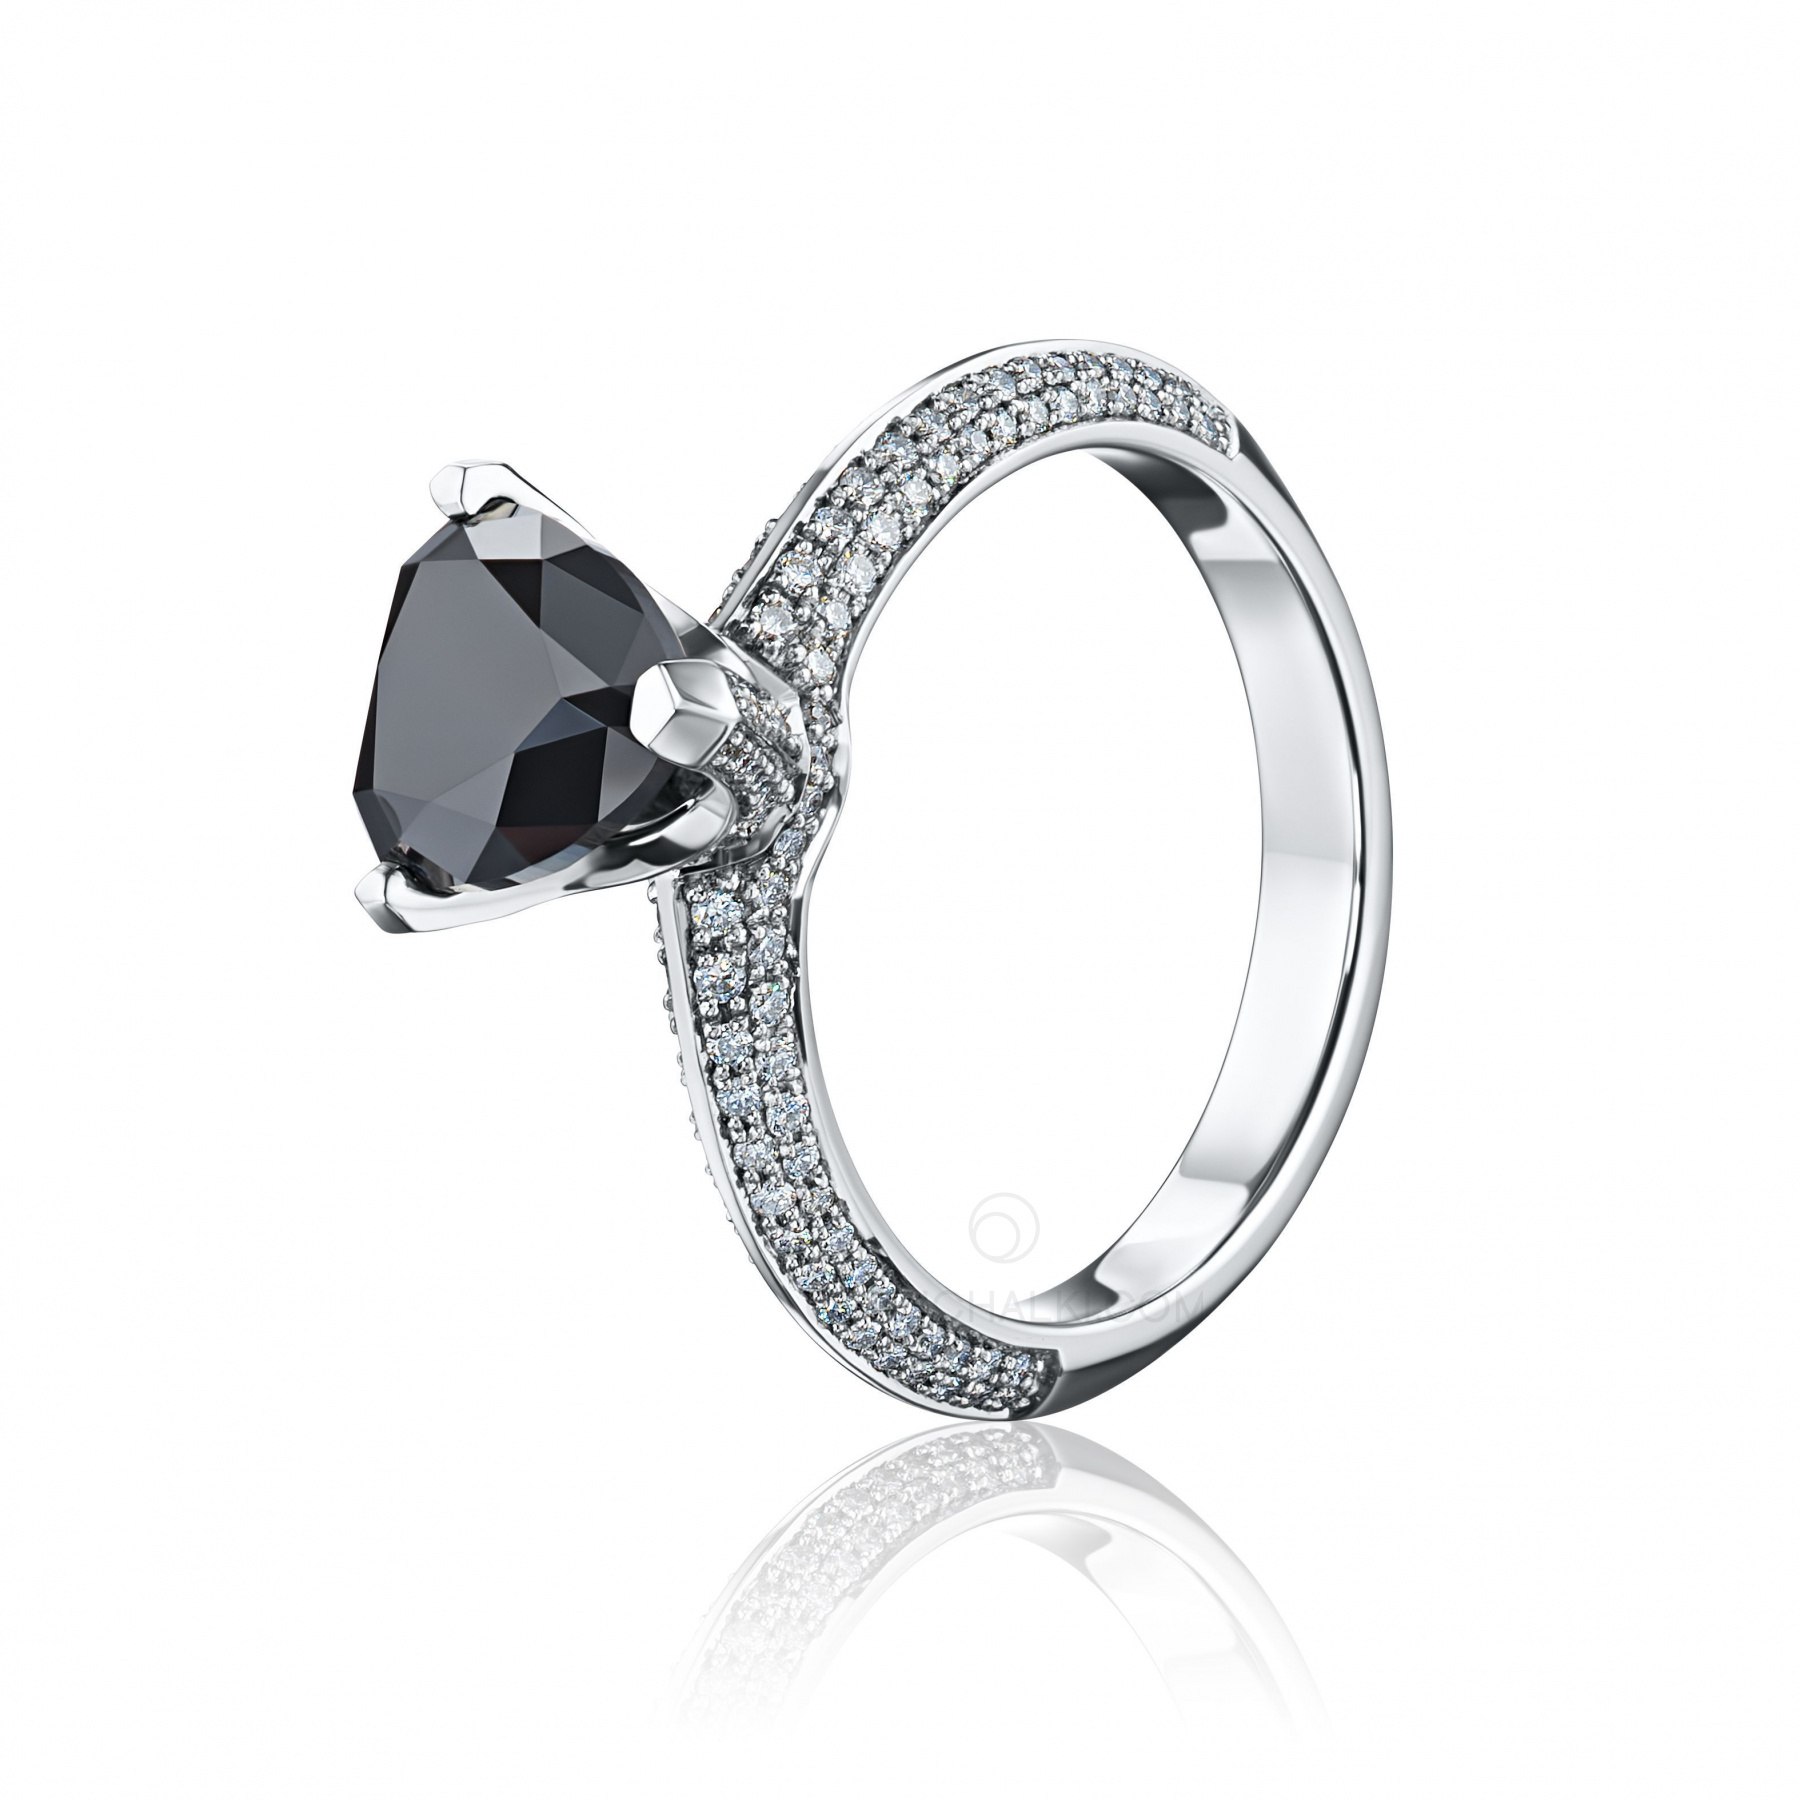 Помолвочное кольцо из белого золота с черным бриллиантом BLACK HEART купить в магазине: цена, оперативная доставка, отзывы | obruchalki.com